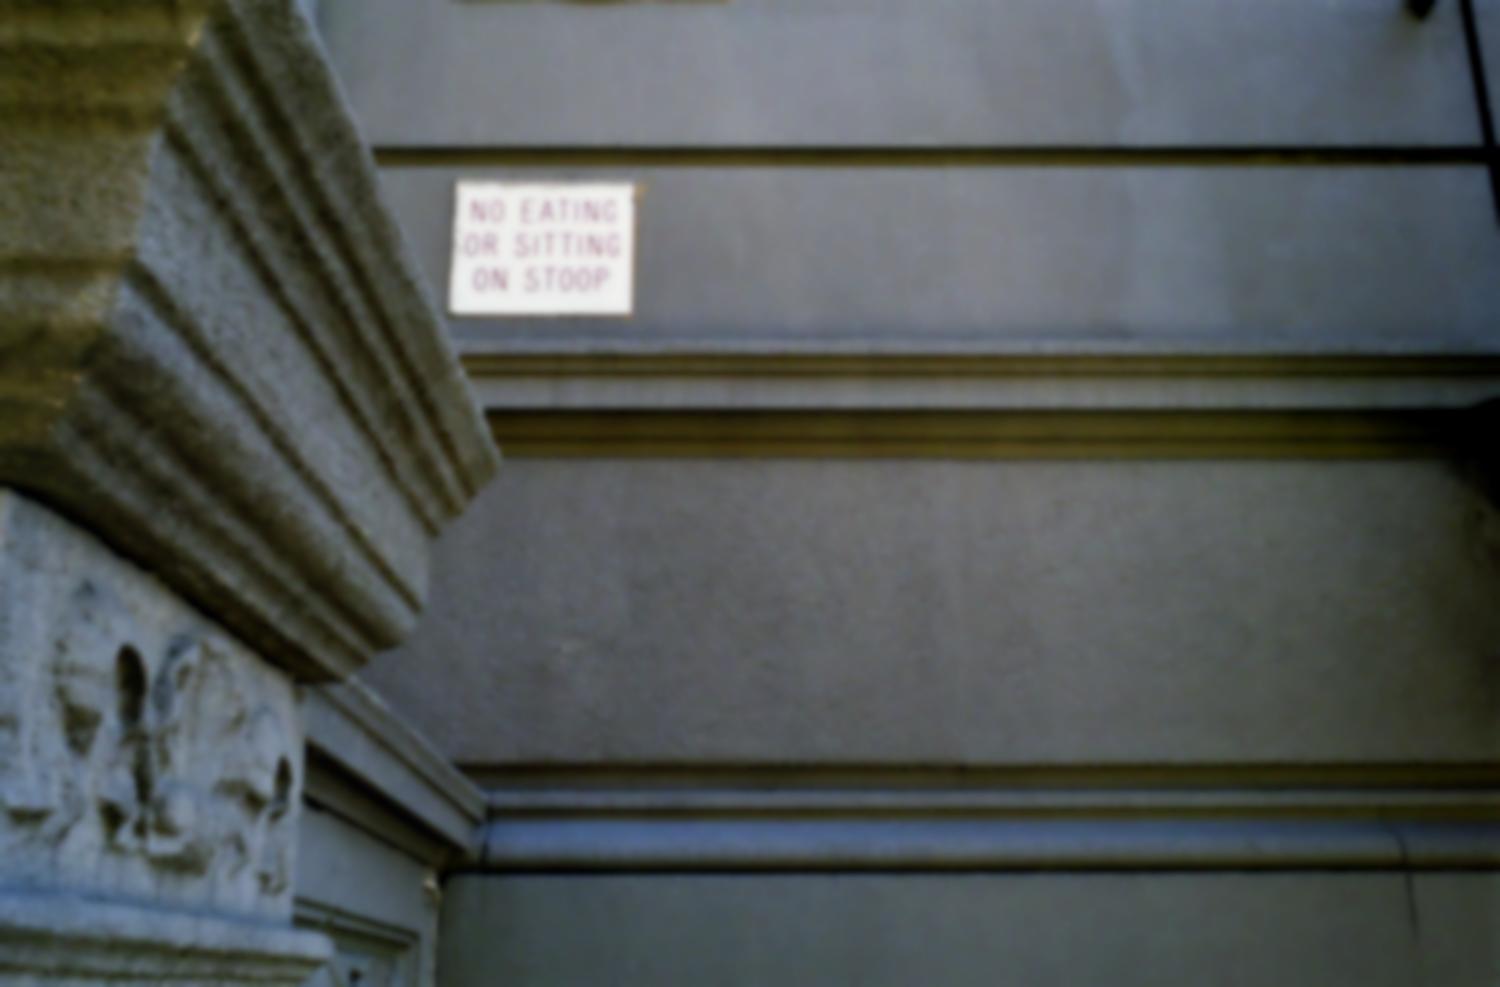 Sur la façade d'immeuble d'habitation, une petite plaque de cuivre : No eating or sitting on stoop. New York, juillet 2003.